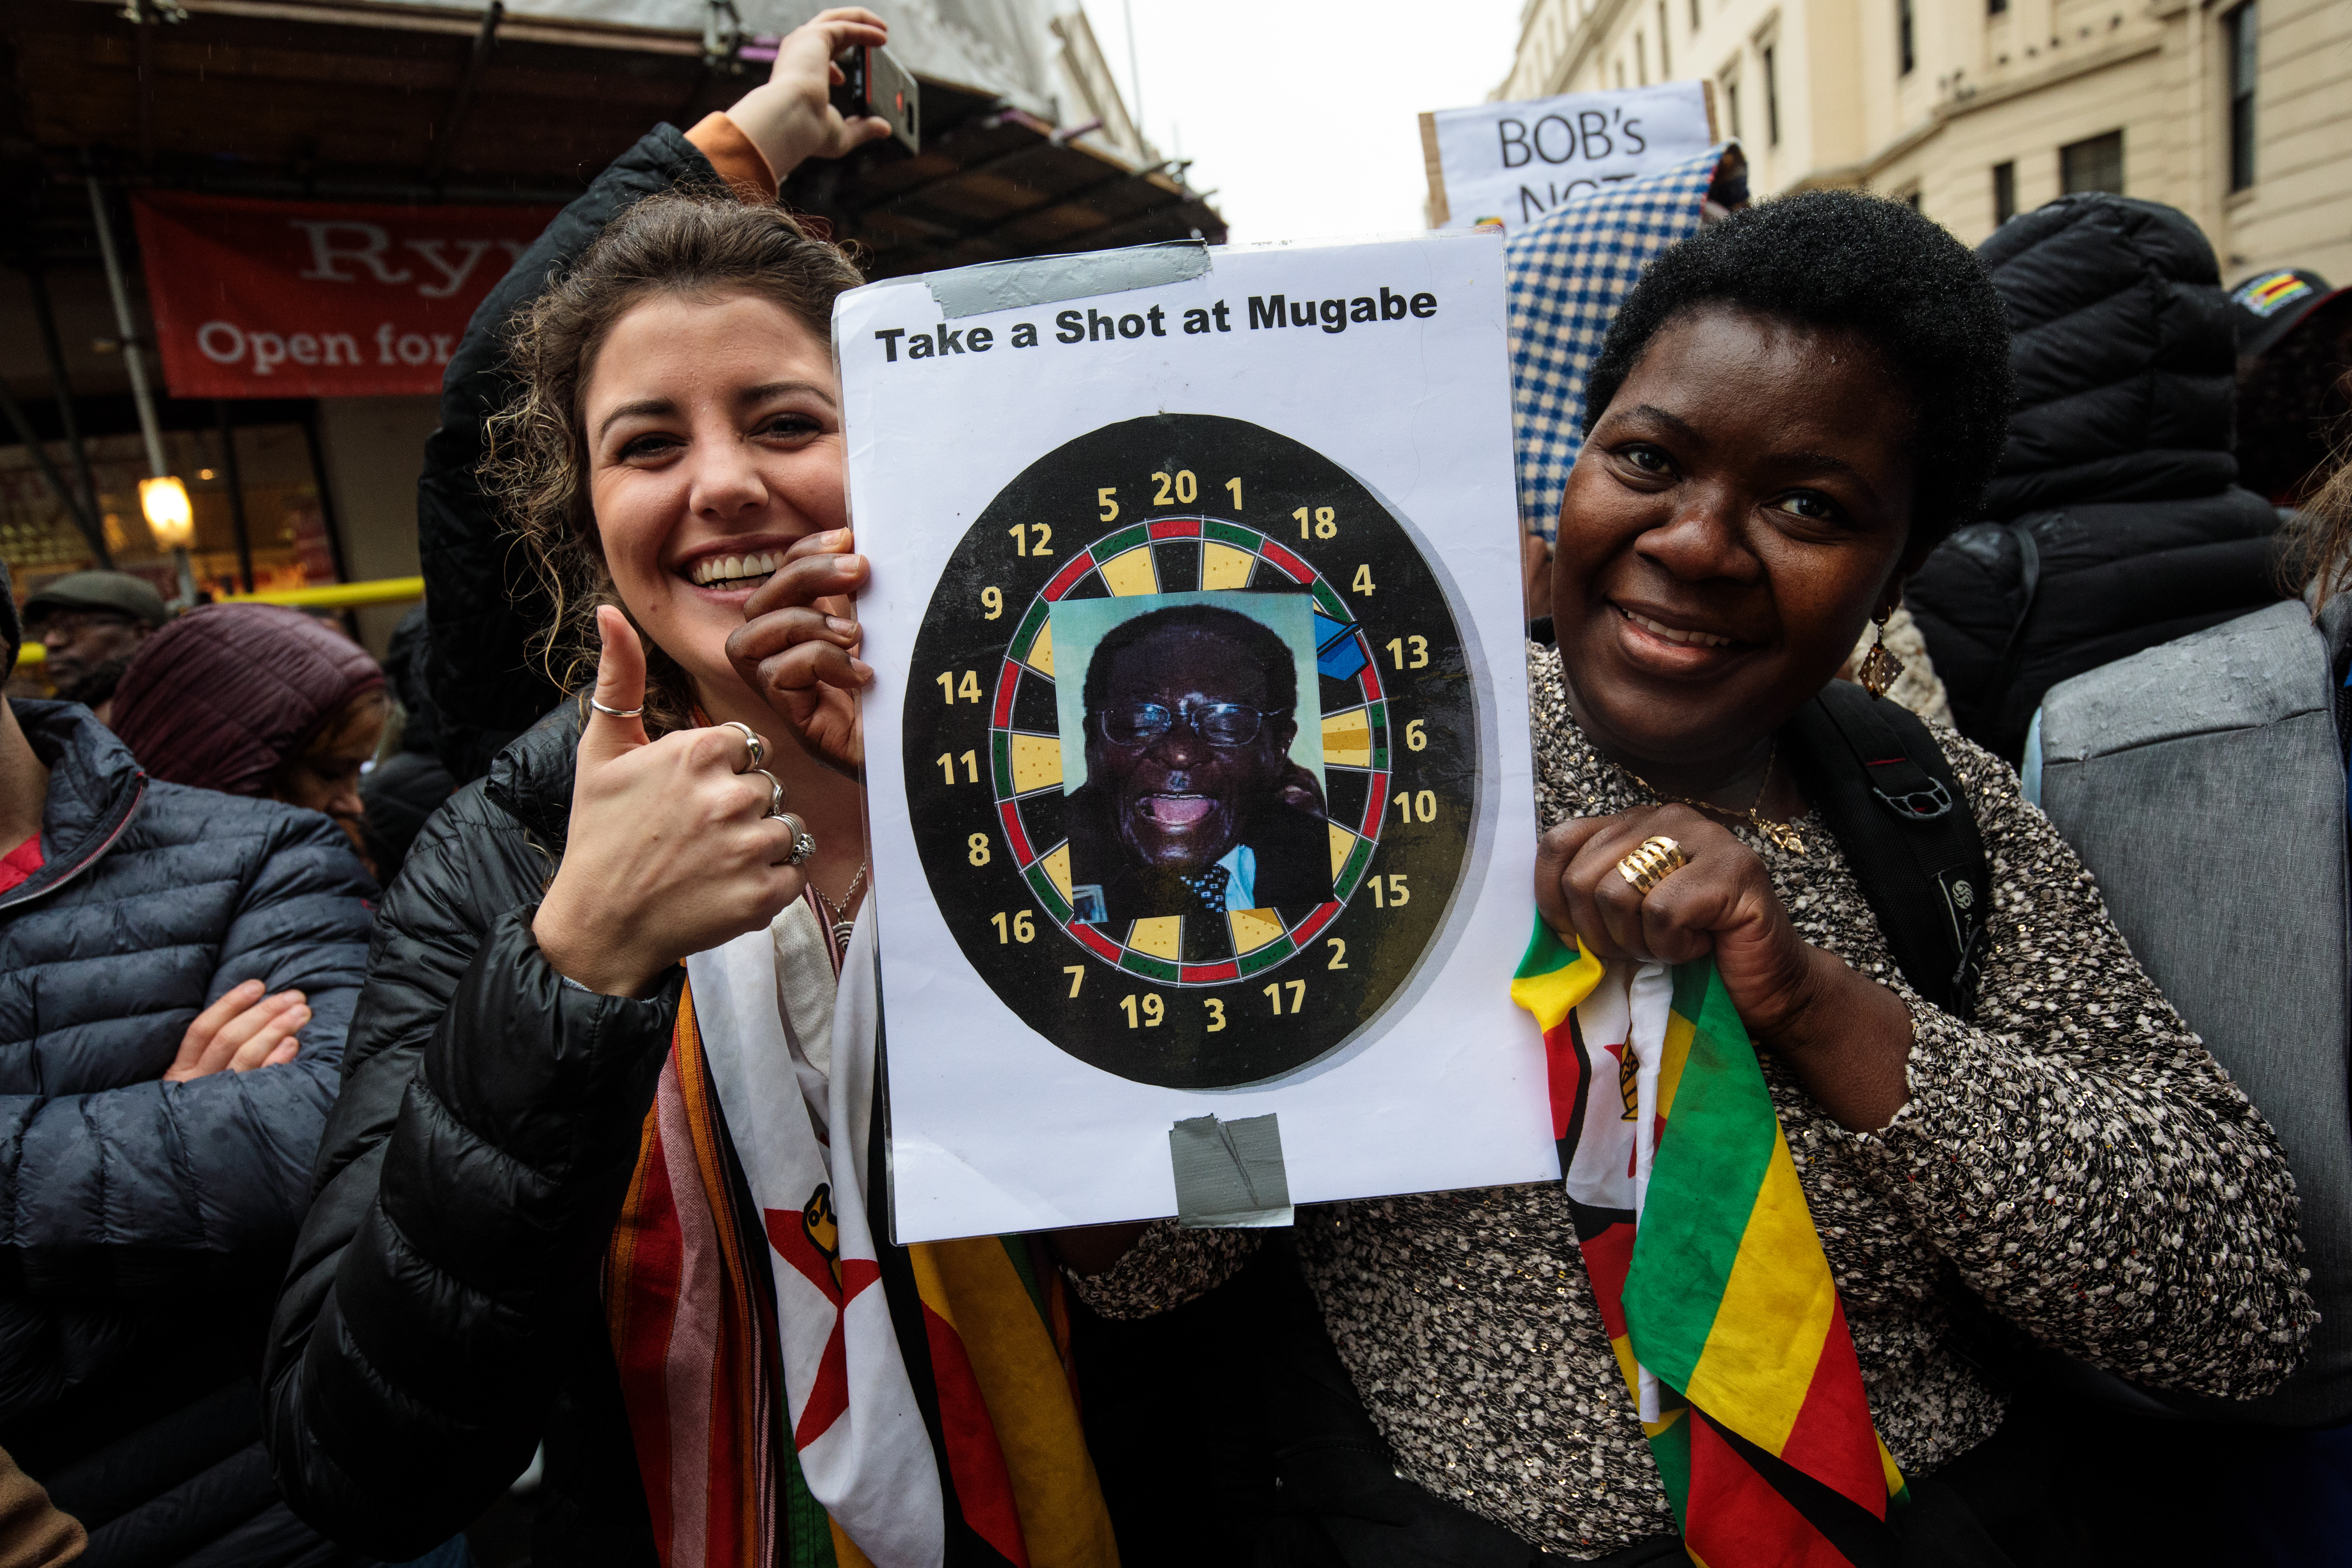 Демонстранти в Лондон, искащи оставката на Робърт Мугабе (на плаката е написано ”Прицелете се в Мугабе” - бел. ред.)